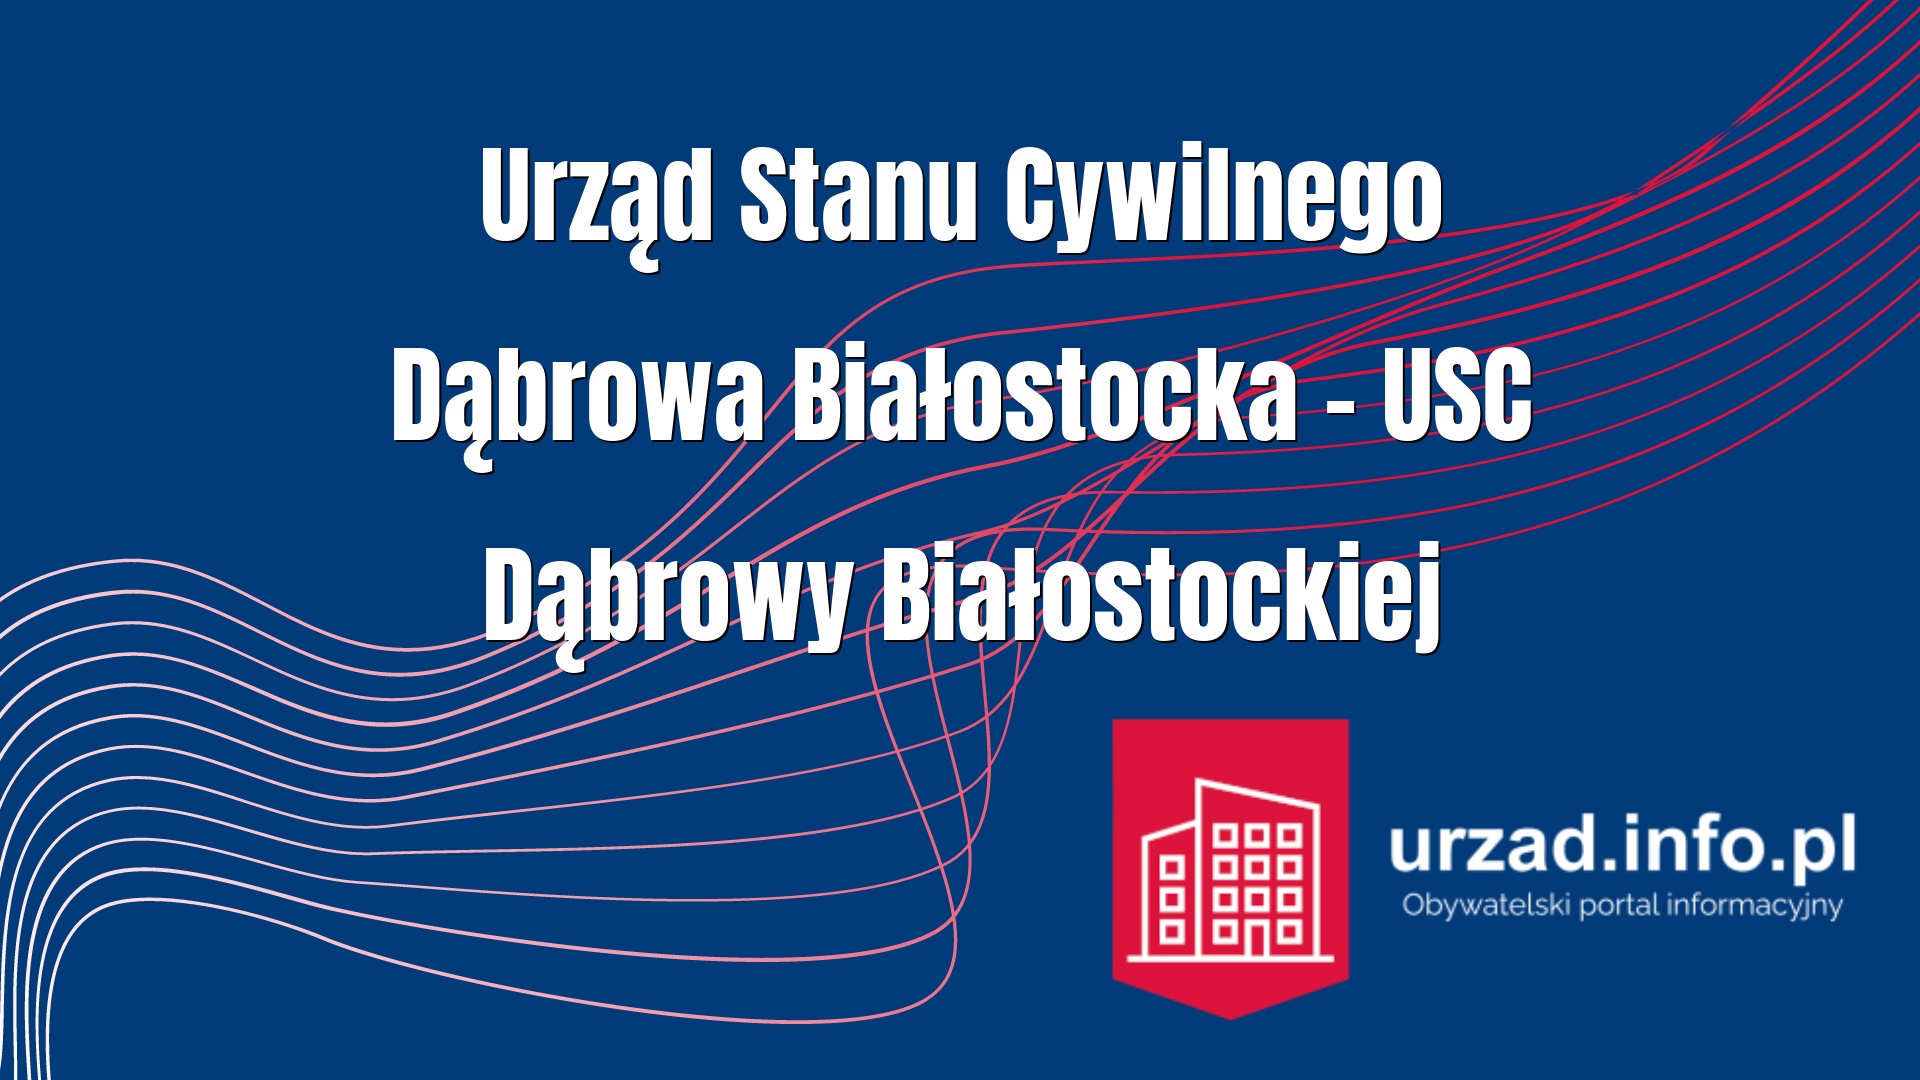 Urząd Stanu Cywilnego Dąbrowa Białostocka – USC Dąbrowy Białostockiej